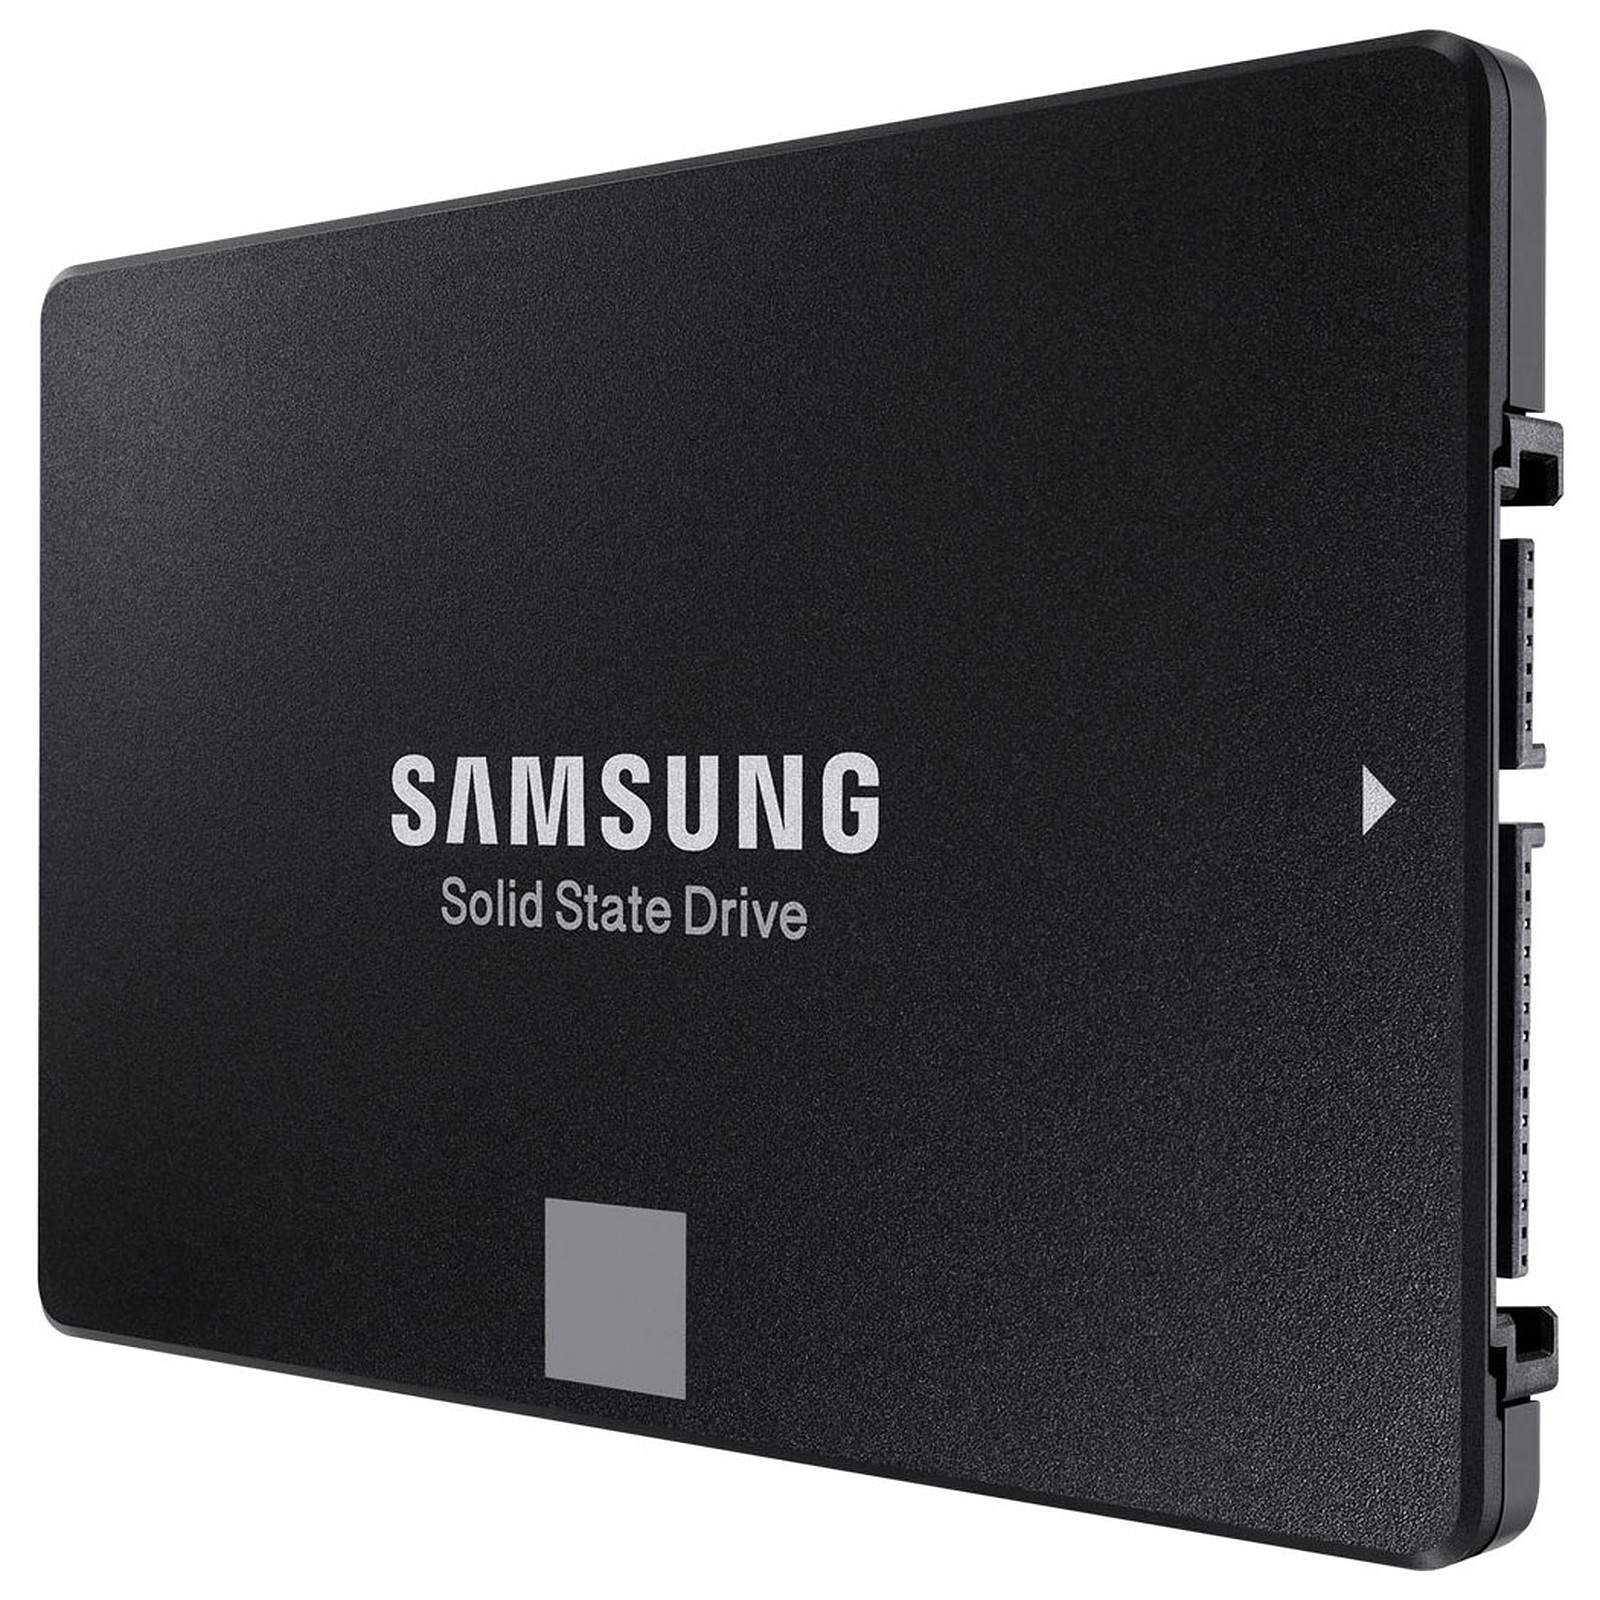 L'excellent SSD Samsung T7 de 1 To est à un très bon prix pour le